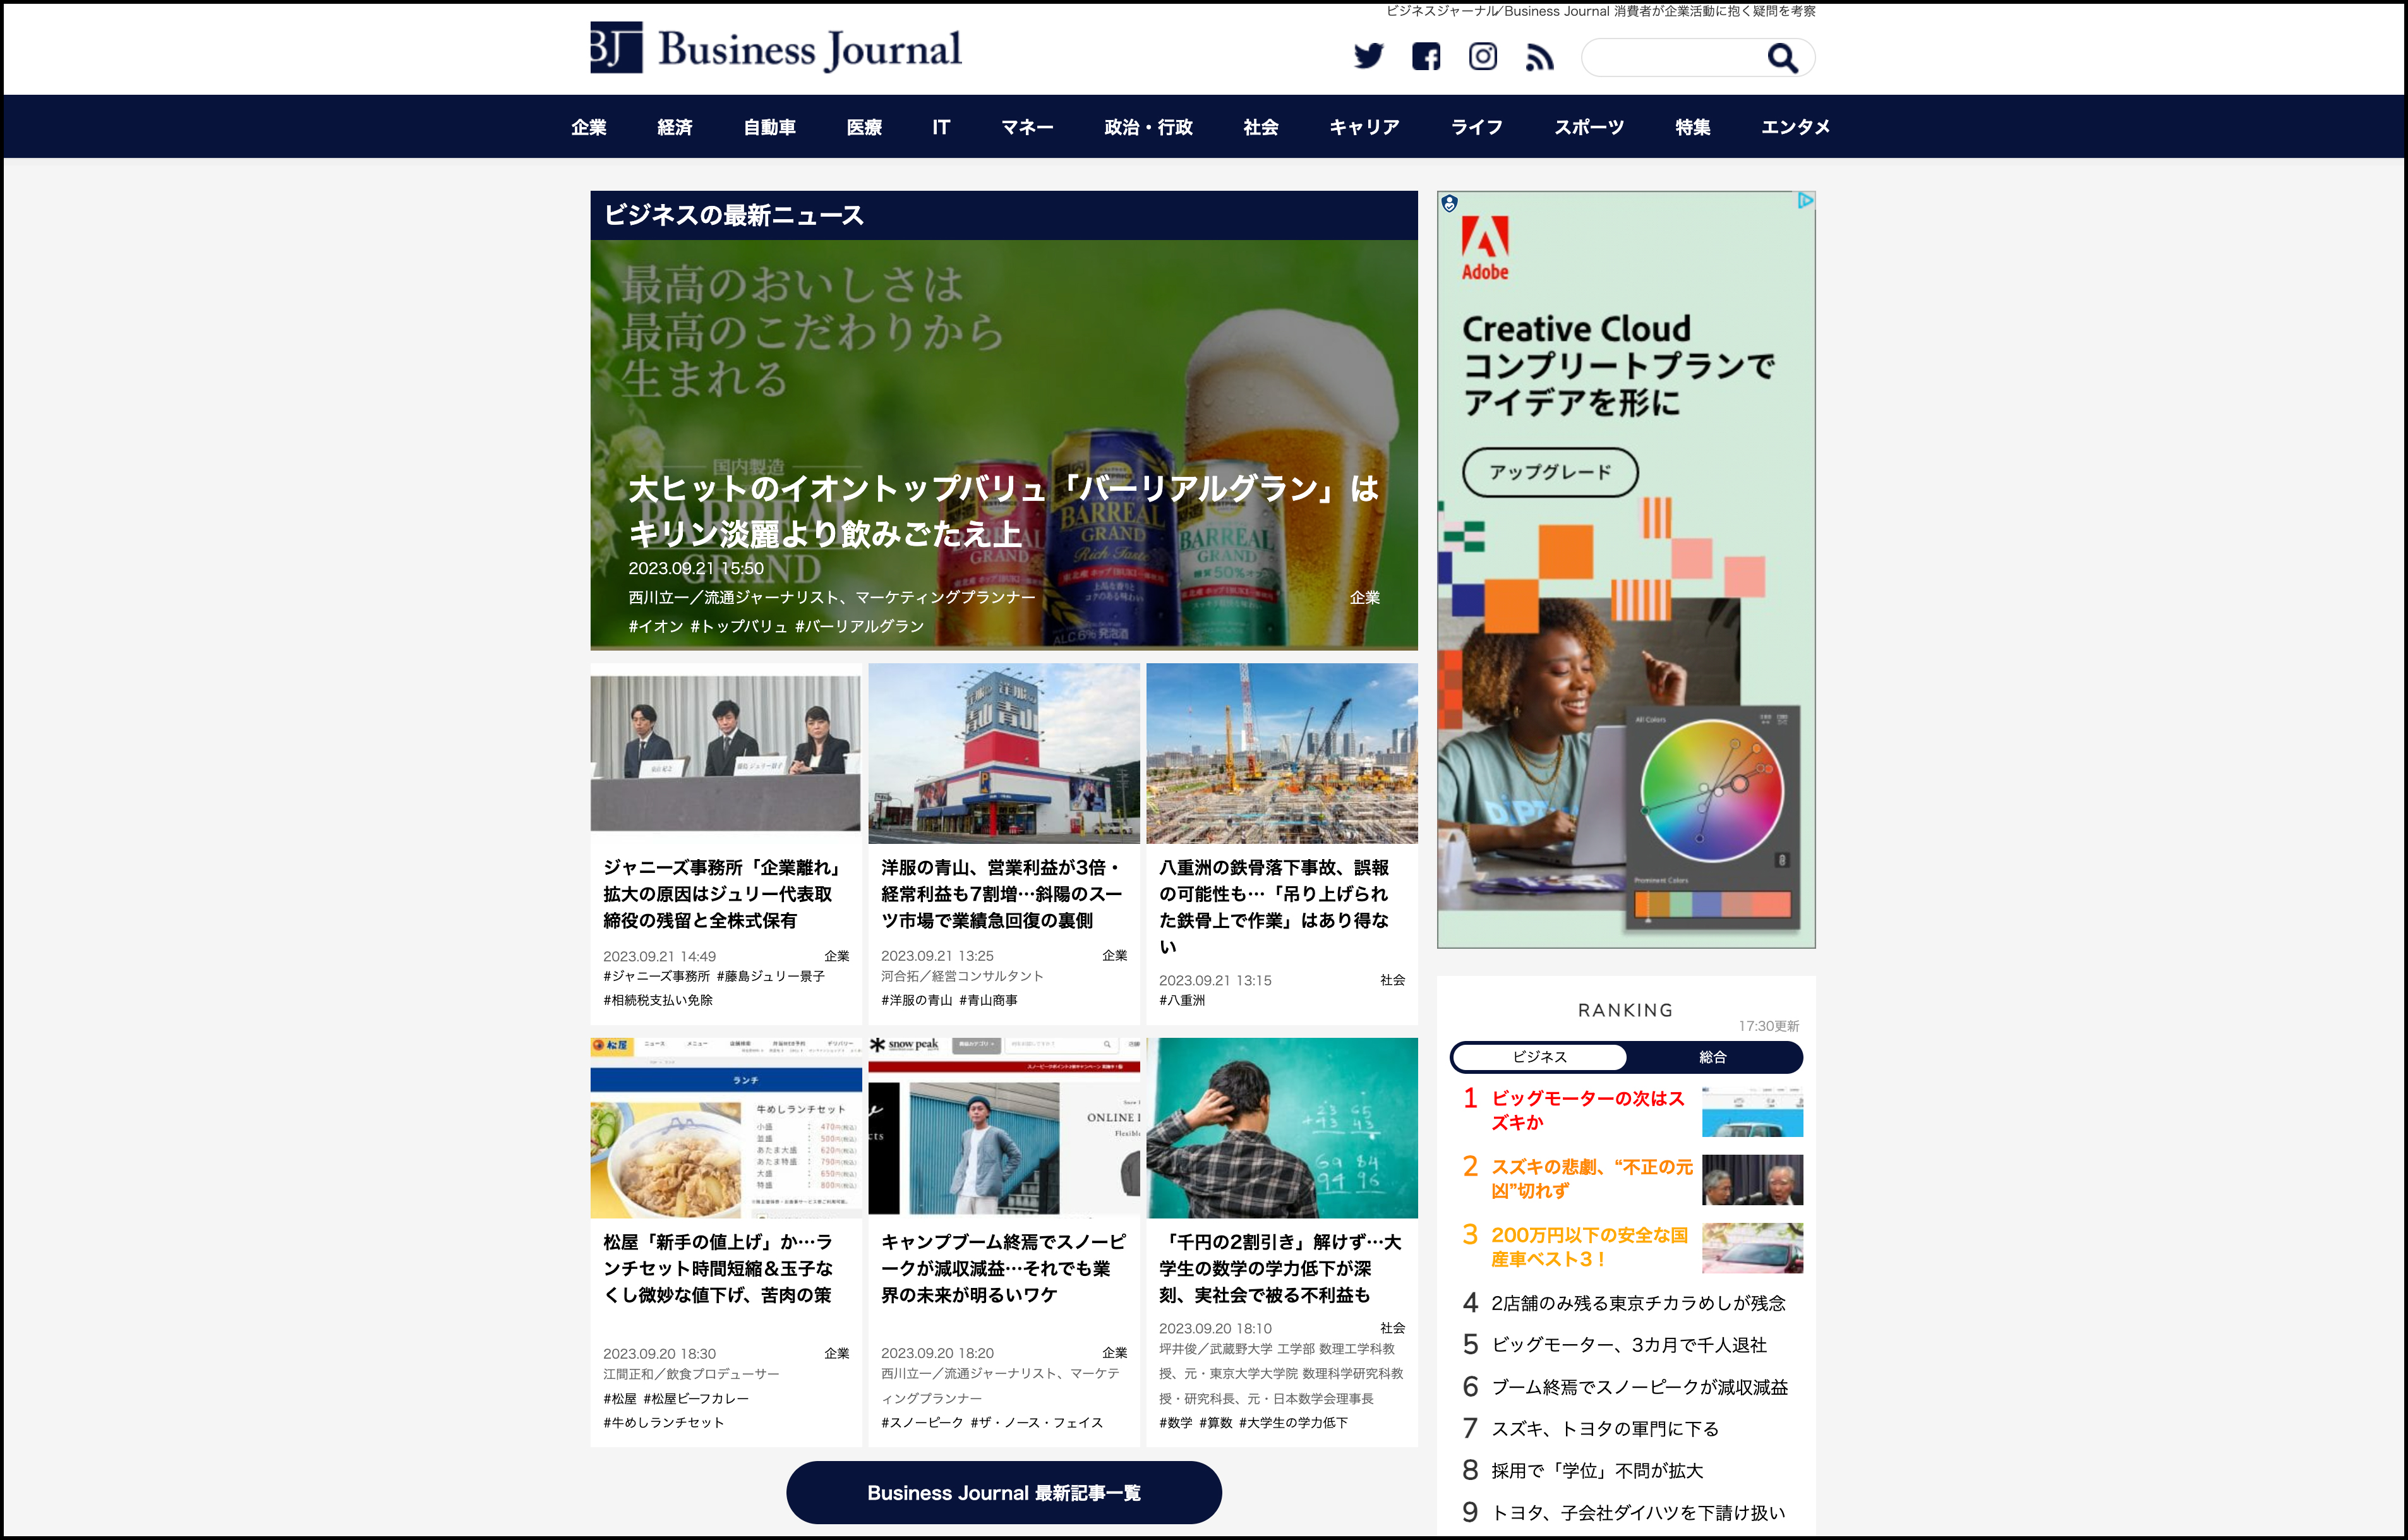 ビジネスジャーナル Business Journal | WEB